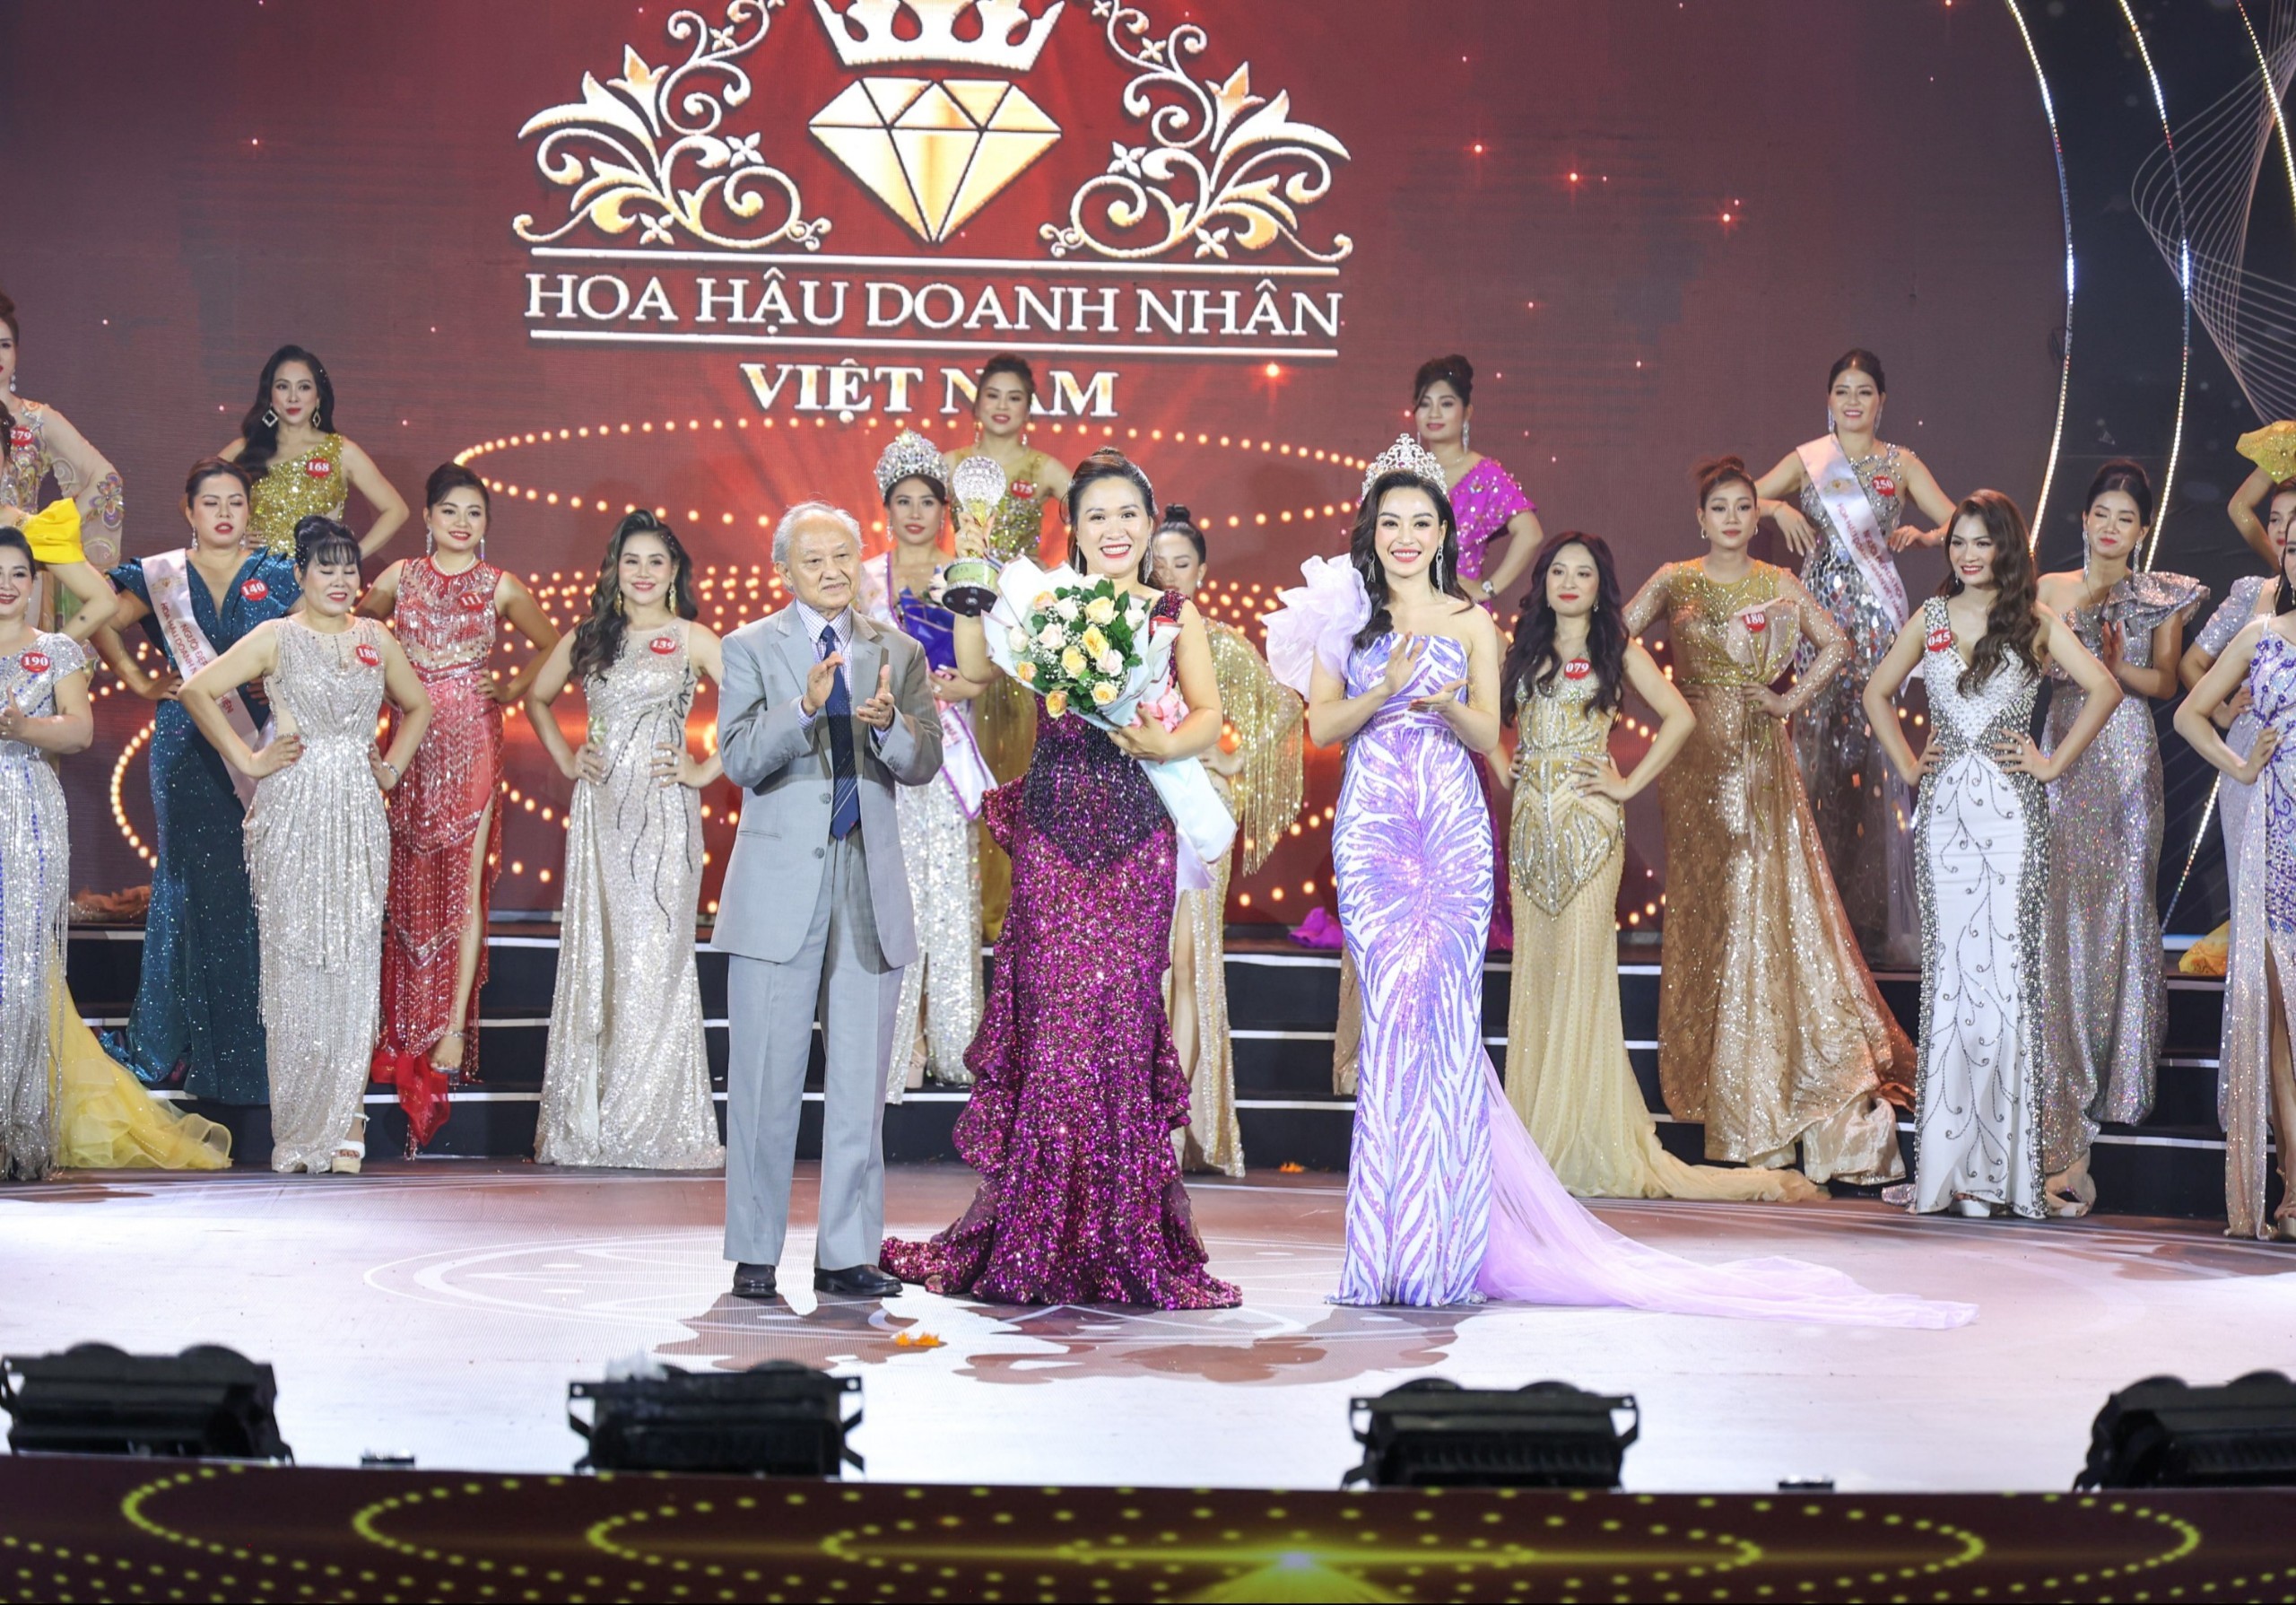 Doanh nhân Nguyễn Ngọc Trang đạt danh hiệu "Người đẹp trí tuệ" của cuộc thi Hoa hậu Doanh nhân Việt Nam 2022